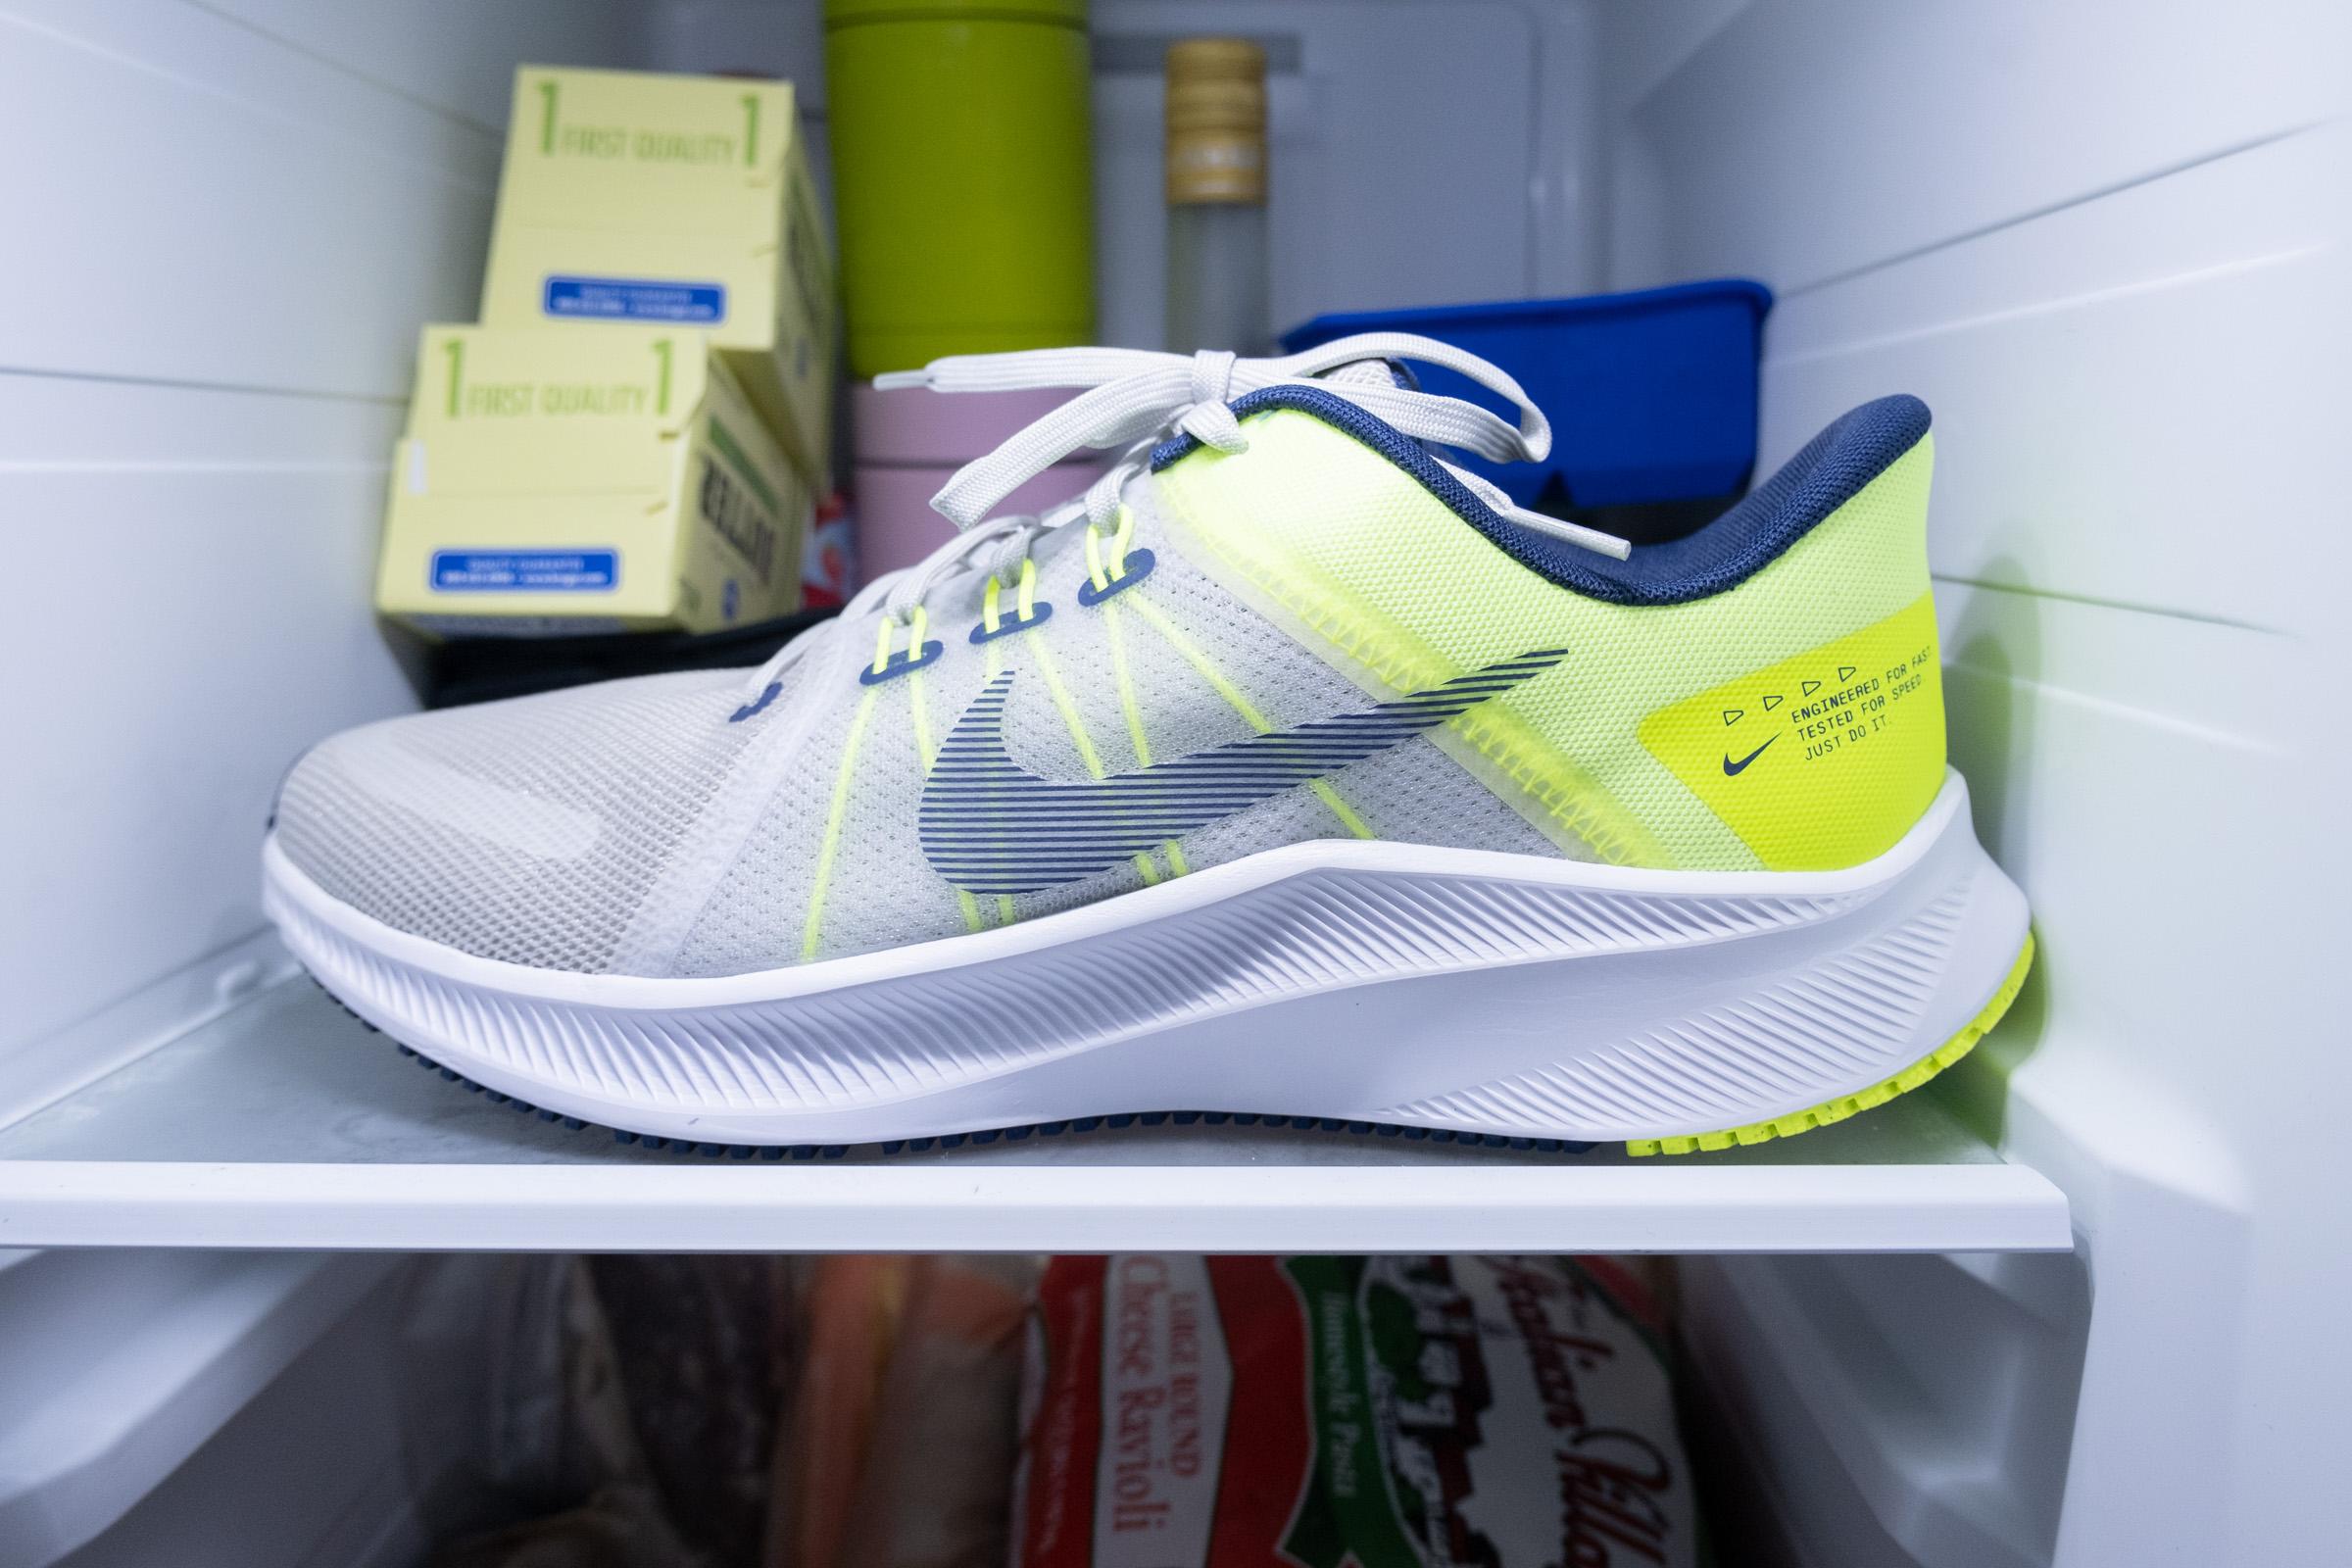 Chaussures running Nike Quest : infos, avis et meilleur prix